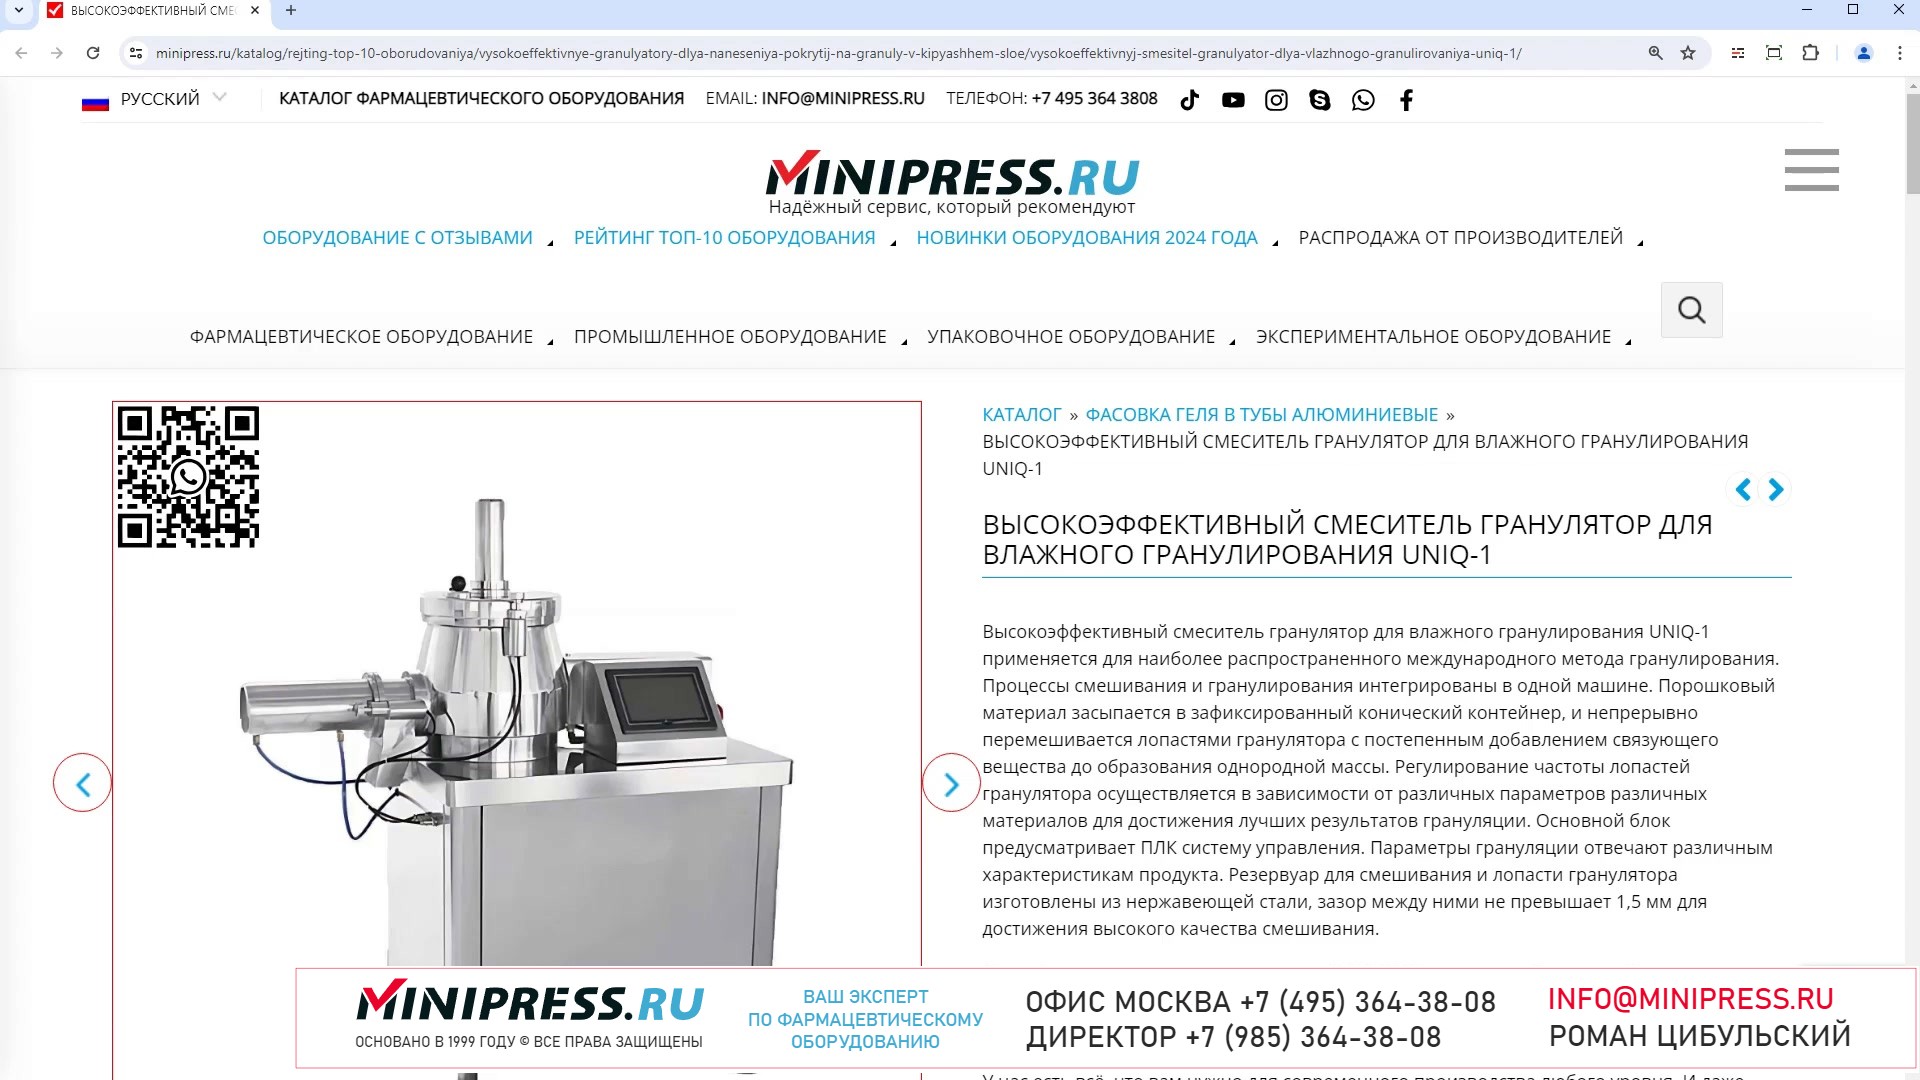 Minipress.ru Высокоэффективный смеситель гранулятор для влажного гранулирования UNIQ-1